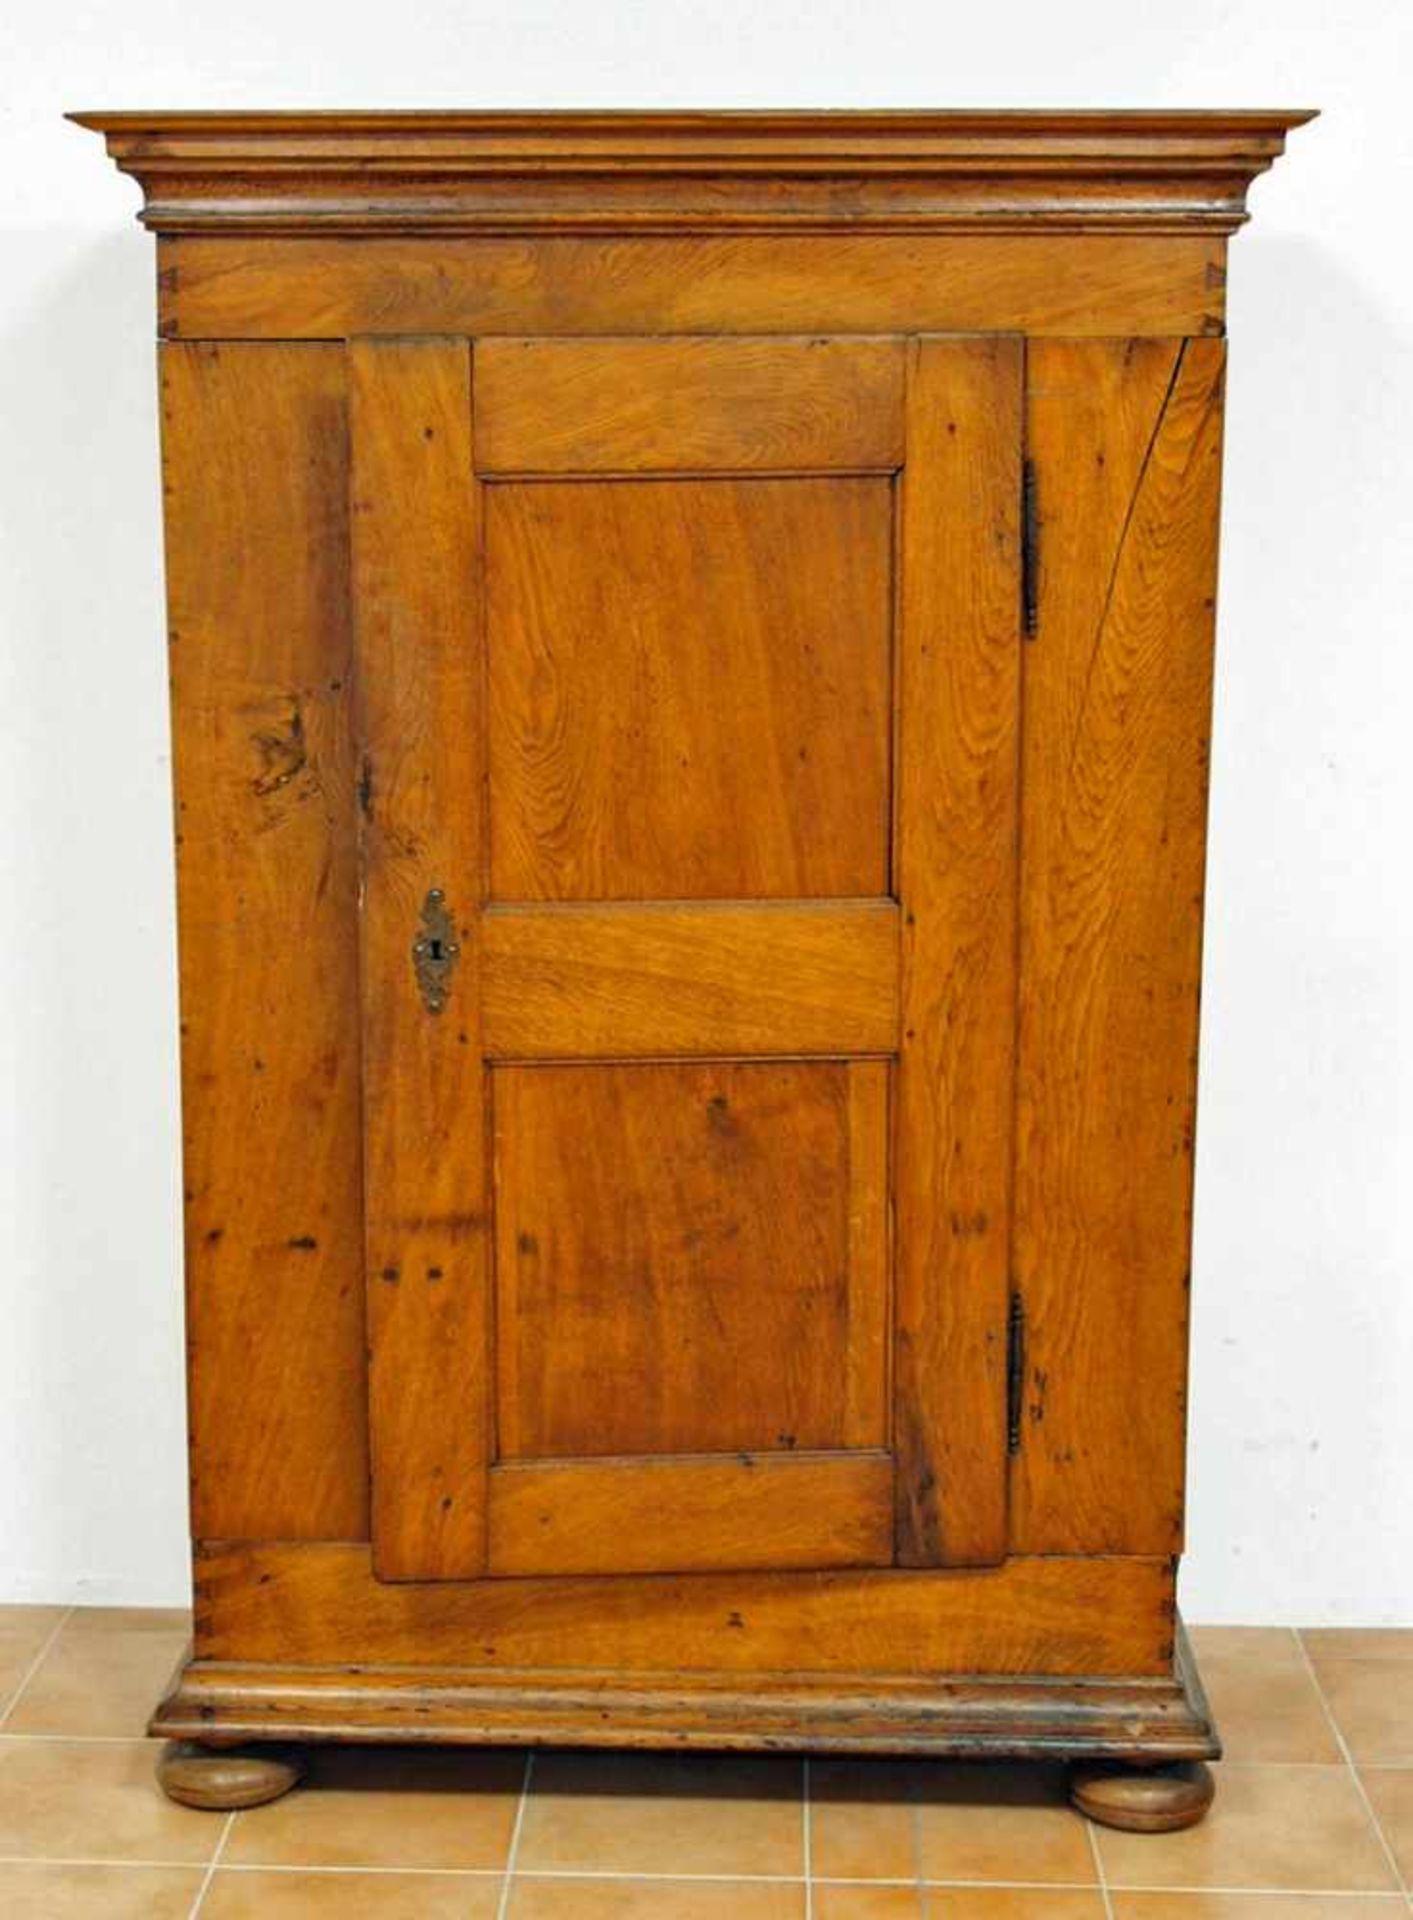 Eintüriger SchrankEiche, Frankreich 18./19. Jahrhundert, 177 x 120 x 48,5 cm- - -25.00 % buyer's